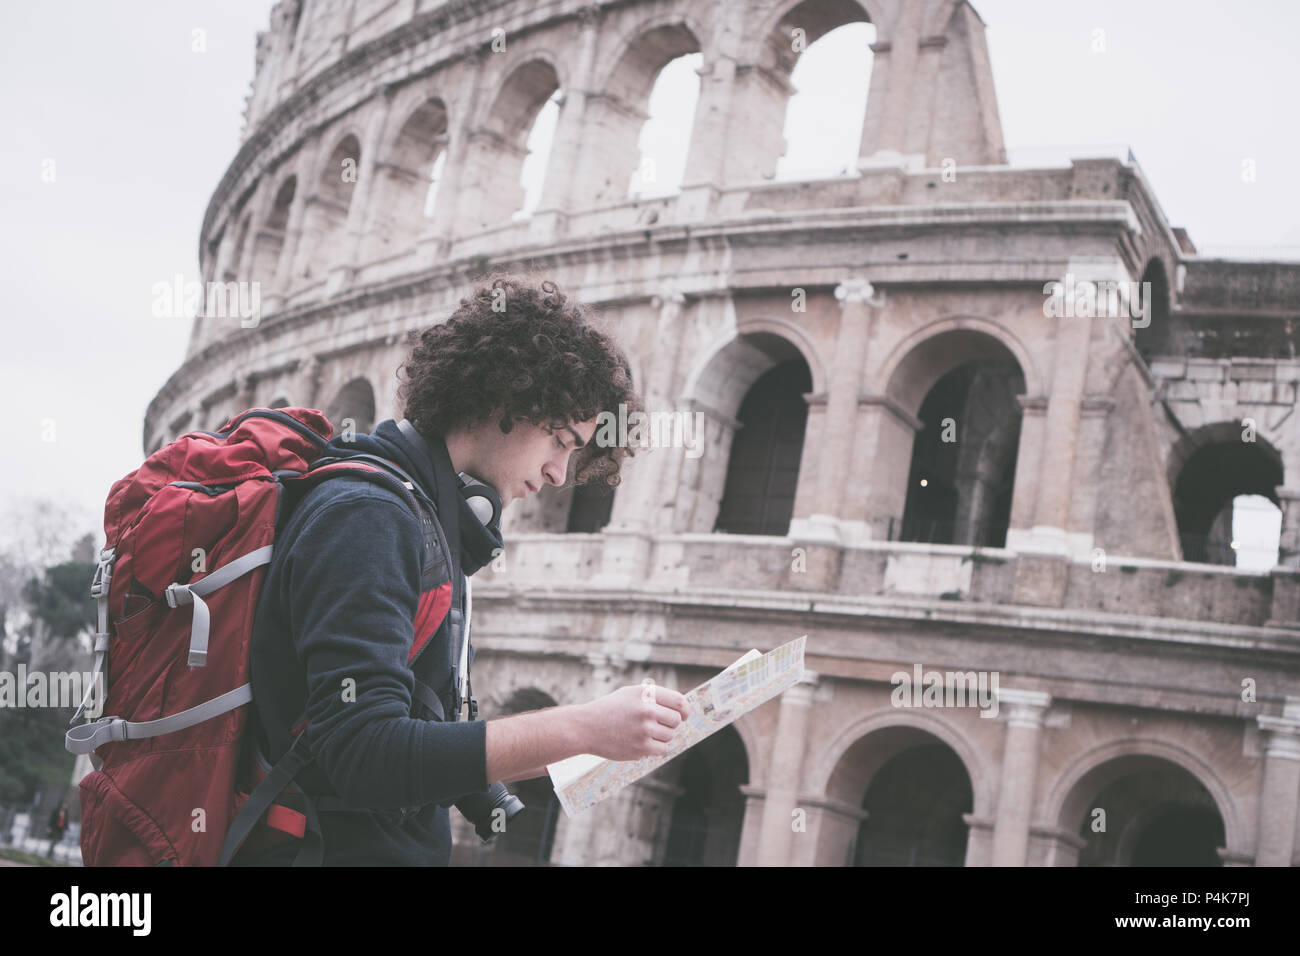 Jahrgang suche Bild von gutaussehenden jungen Reisenden an touristische Karte in Rom suchen vor dem Kolosseum. Backpacker mit Kamera und Touristische Karte Stockfoto